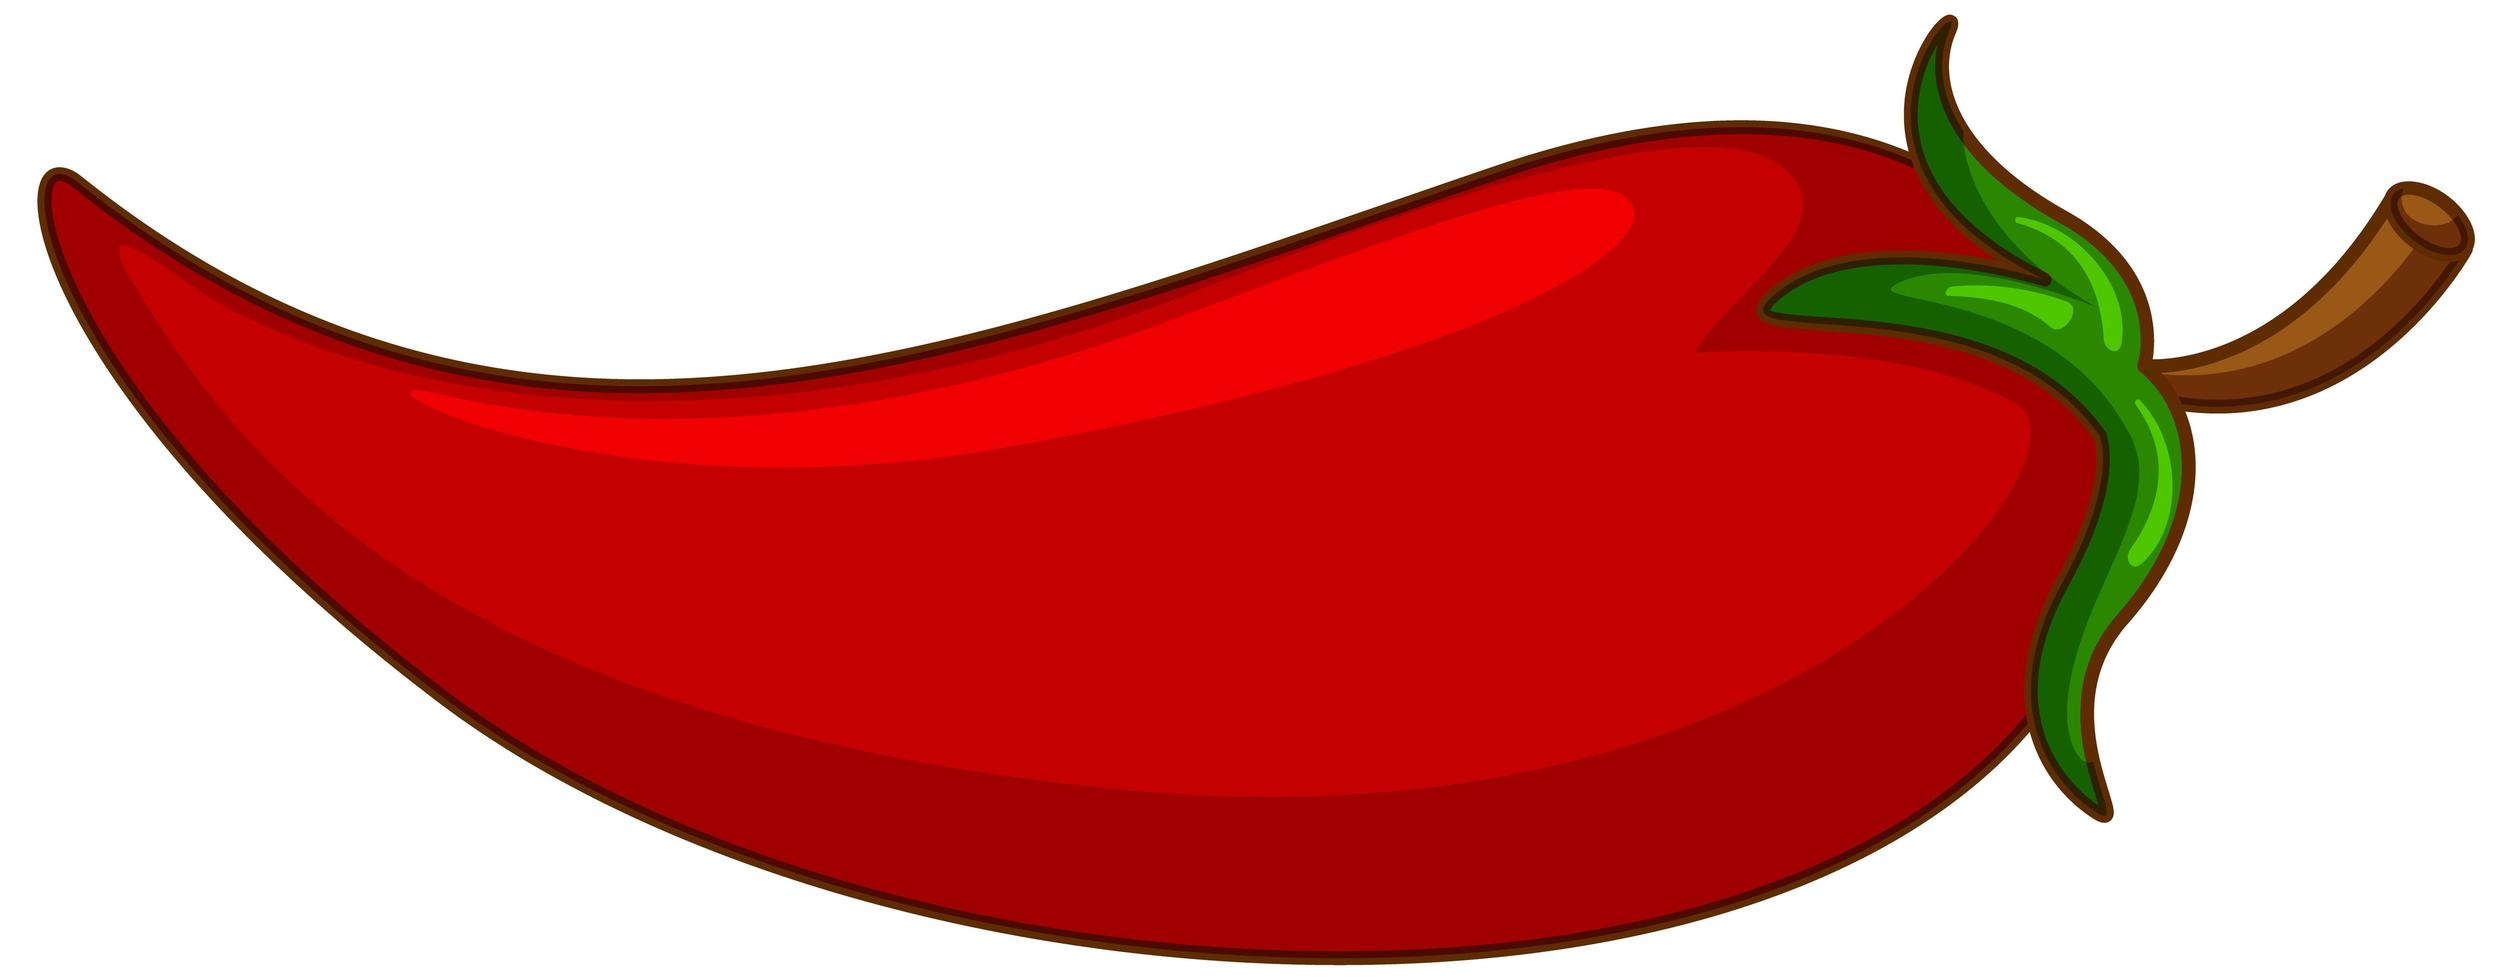 een rode chili op witte achtergrond vector